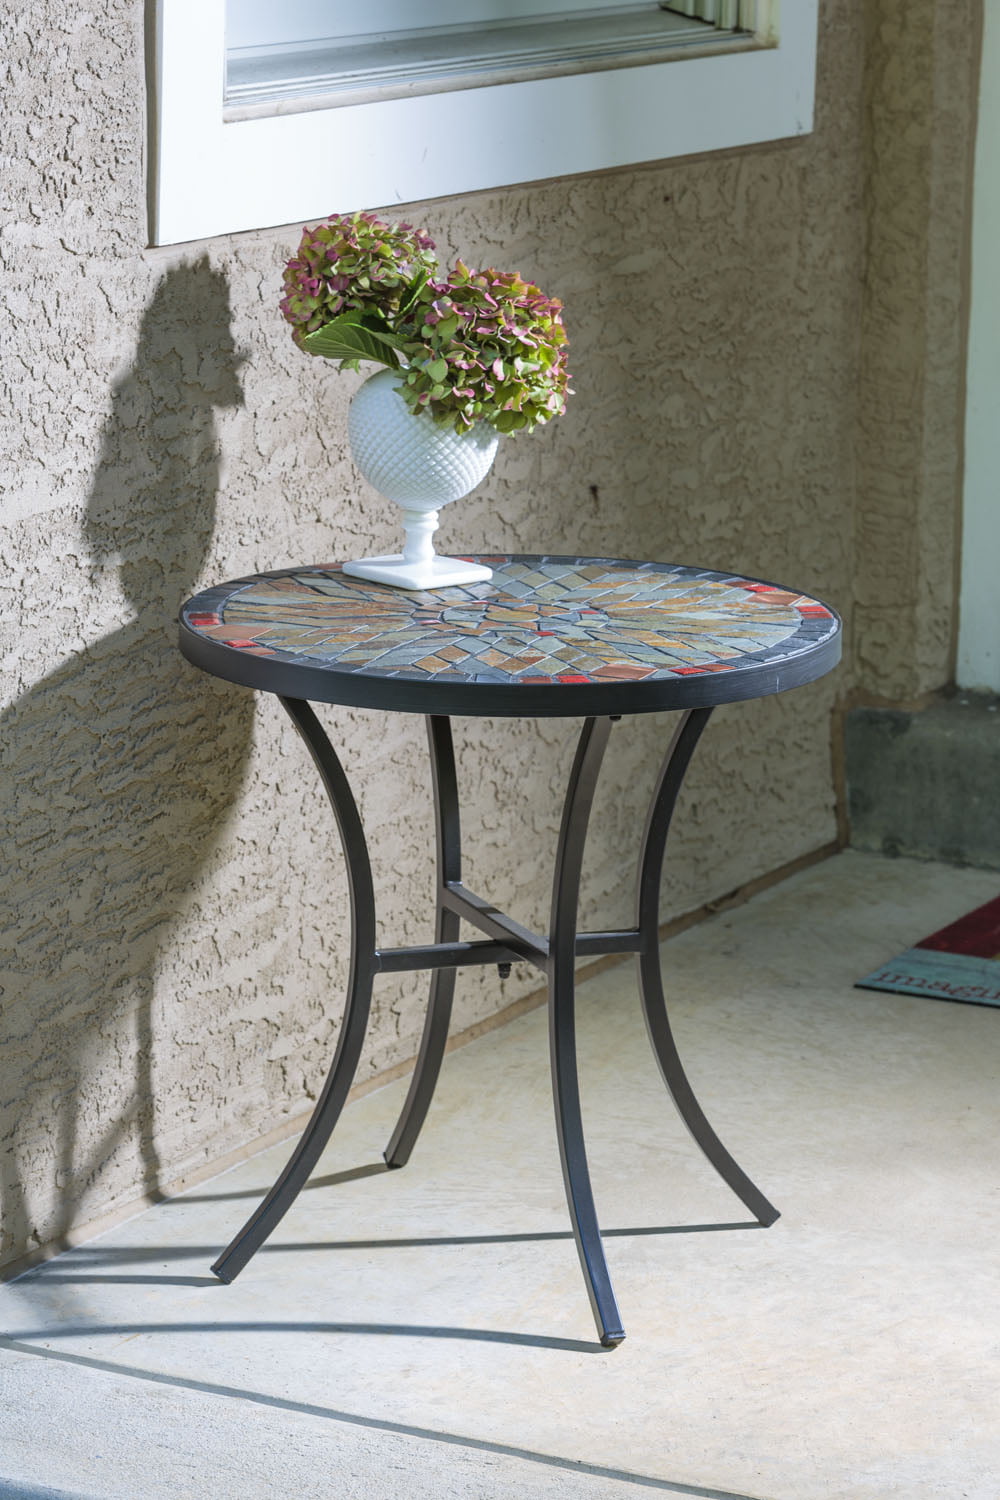 Alfresco Home Sagrada 20 Round Ceramic, Mosaic Tiles Round Outdoor Coffee Table